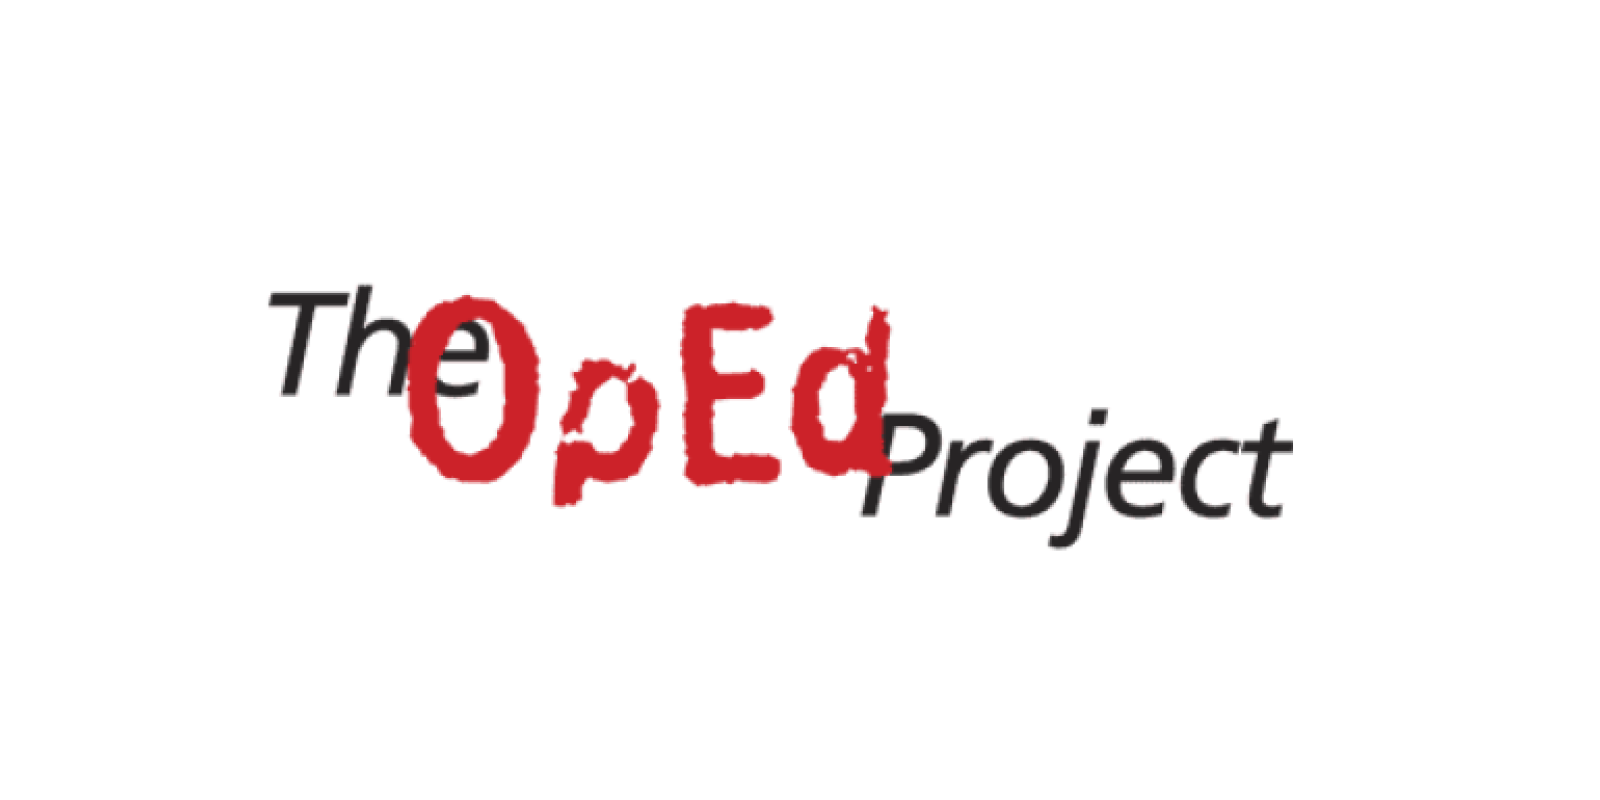 op ed project logo